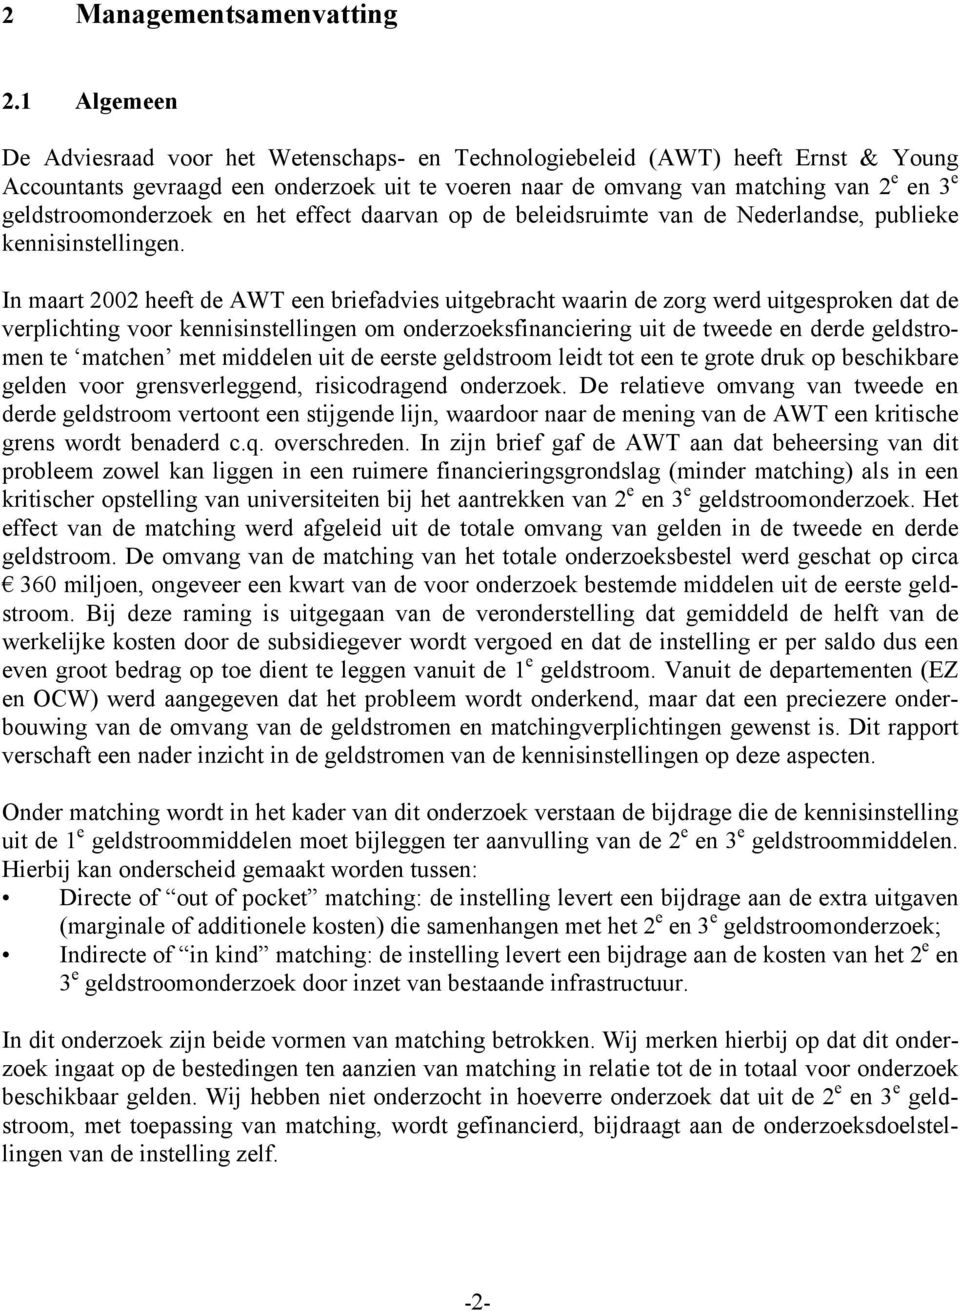 geldstroomonderzoek en het effect daarvan op de beleidsruimte van de Nederlandse, publieke kennisinstellingen.